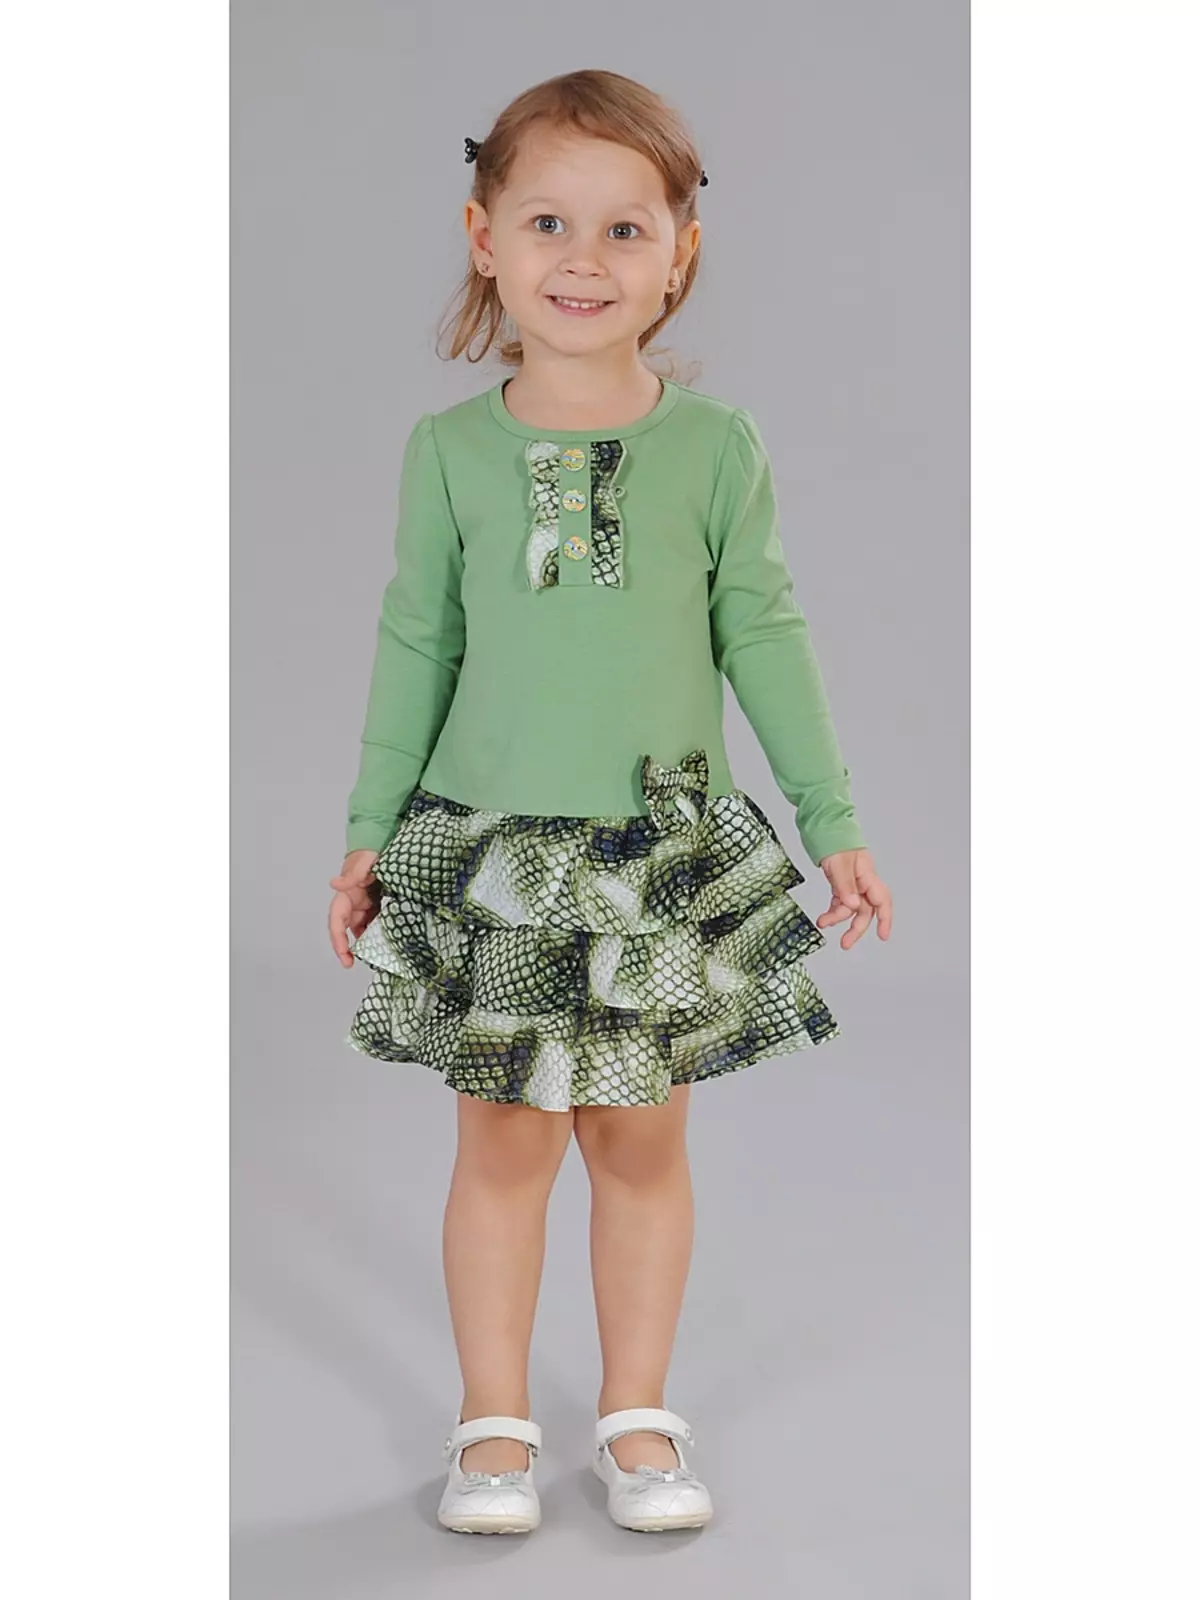 Cutie Susie (52 Fotos): Schuluniform, Kleider, Kostüme und andere Kinderbekleidung für Mädchen 7 Jahre, Produktbewertungen 3792_25